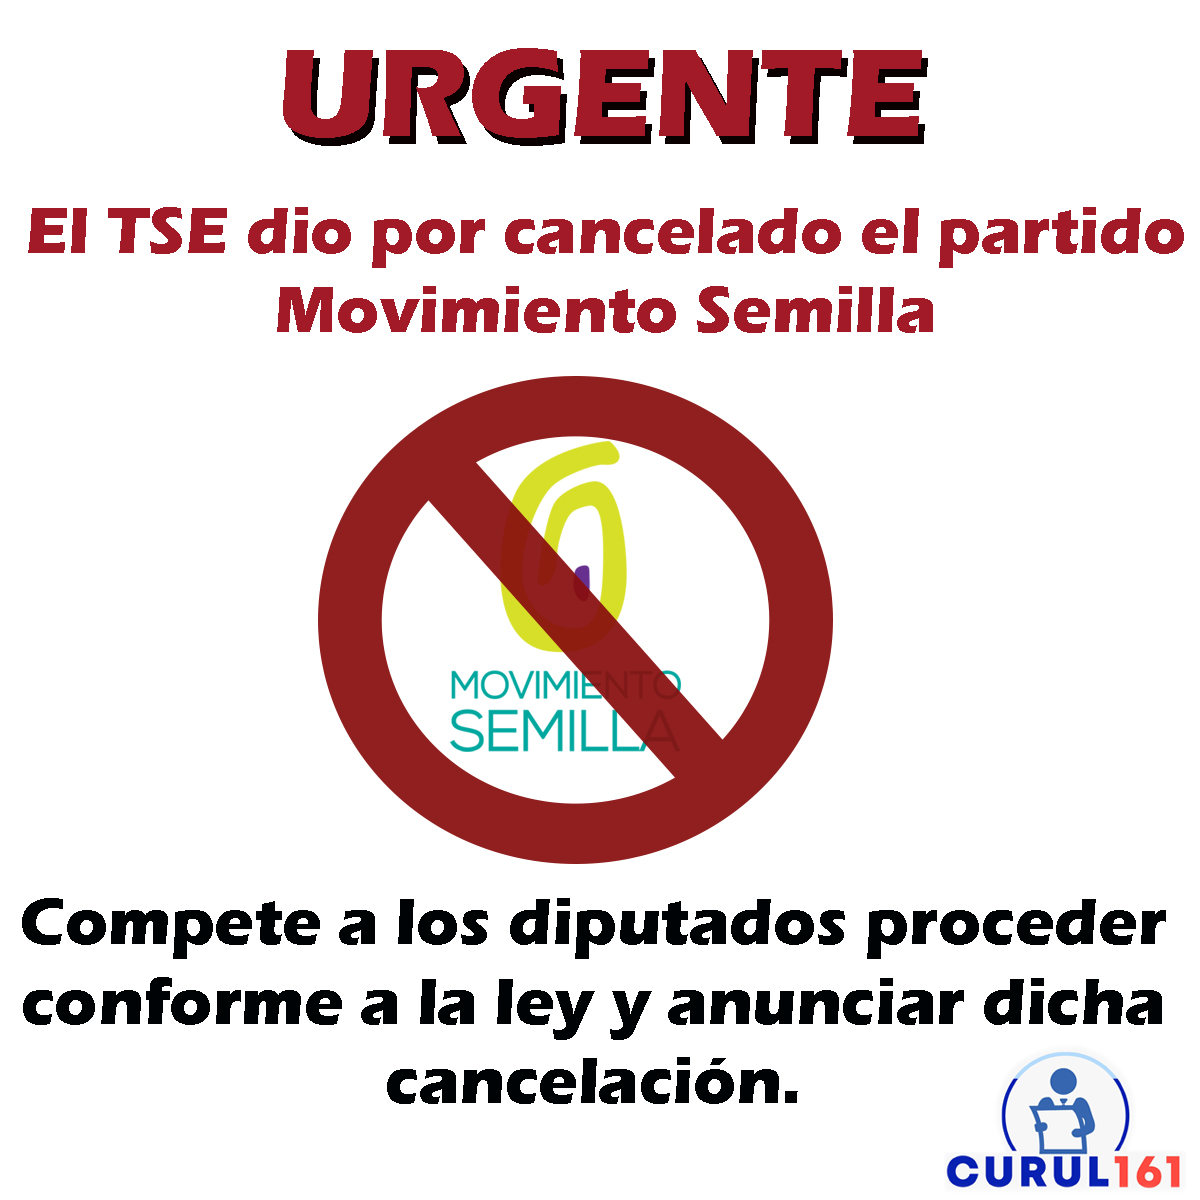 #Urgente TSE dio por cancelado el partido Movimiento Semilla

#TSE #CongresoGT #MovimientoSemilla #Cancelado